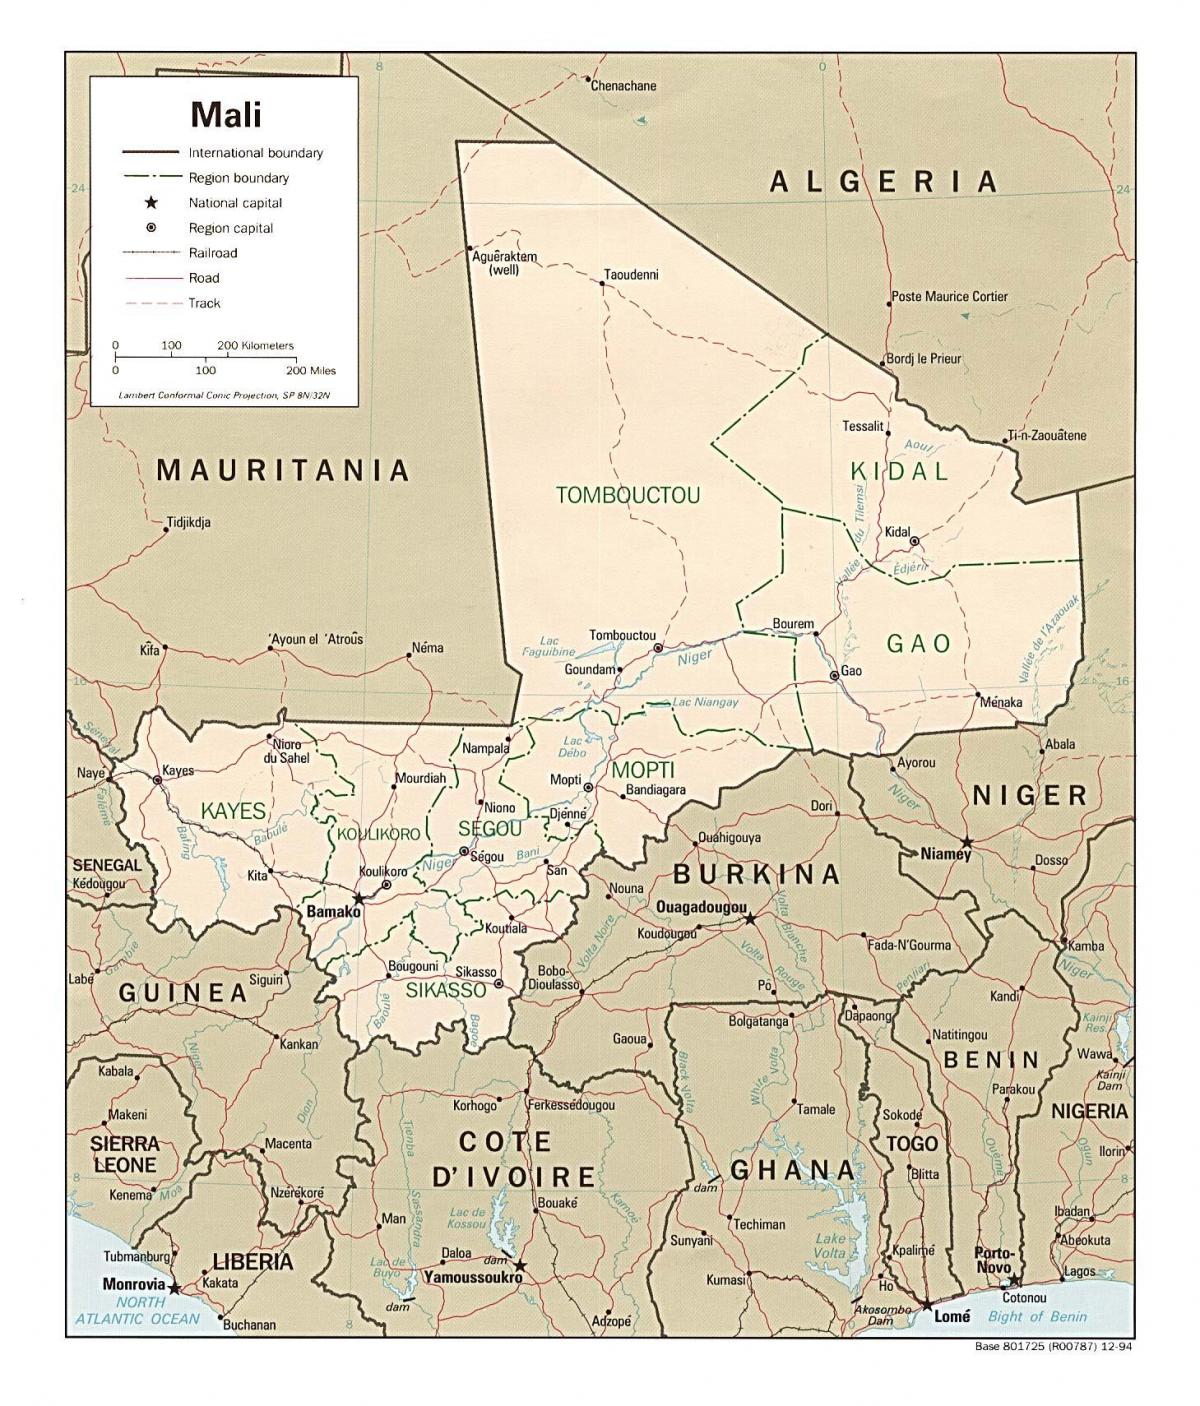 Kaart Mali riik